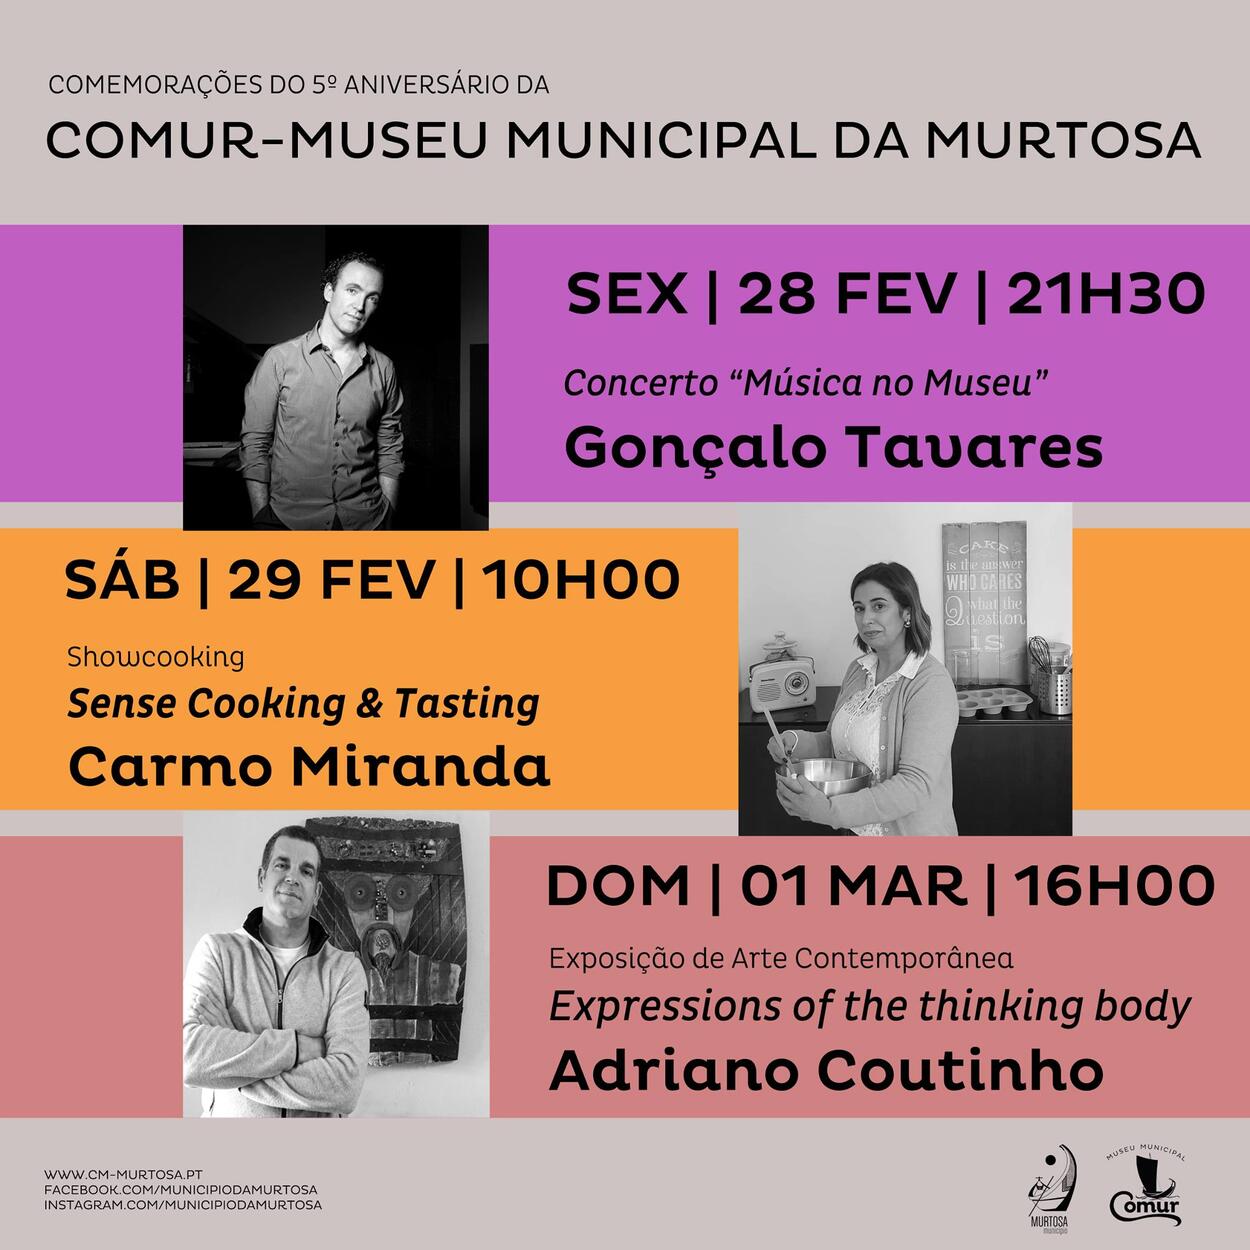 COMUR – MUSEU MUNICIPAL DA MURTOSA CELEBRA 5 ANOS DE EXISTÊNCIA